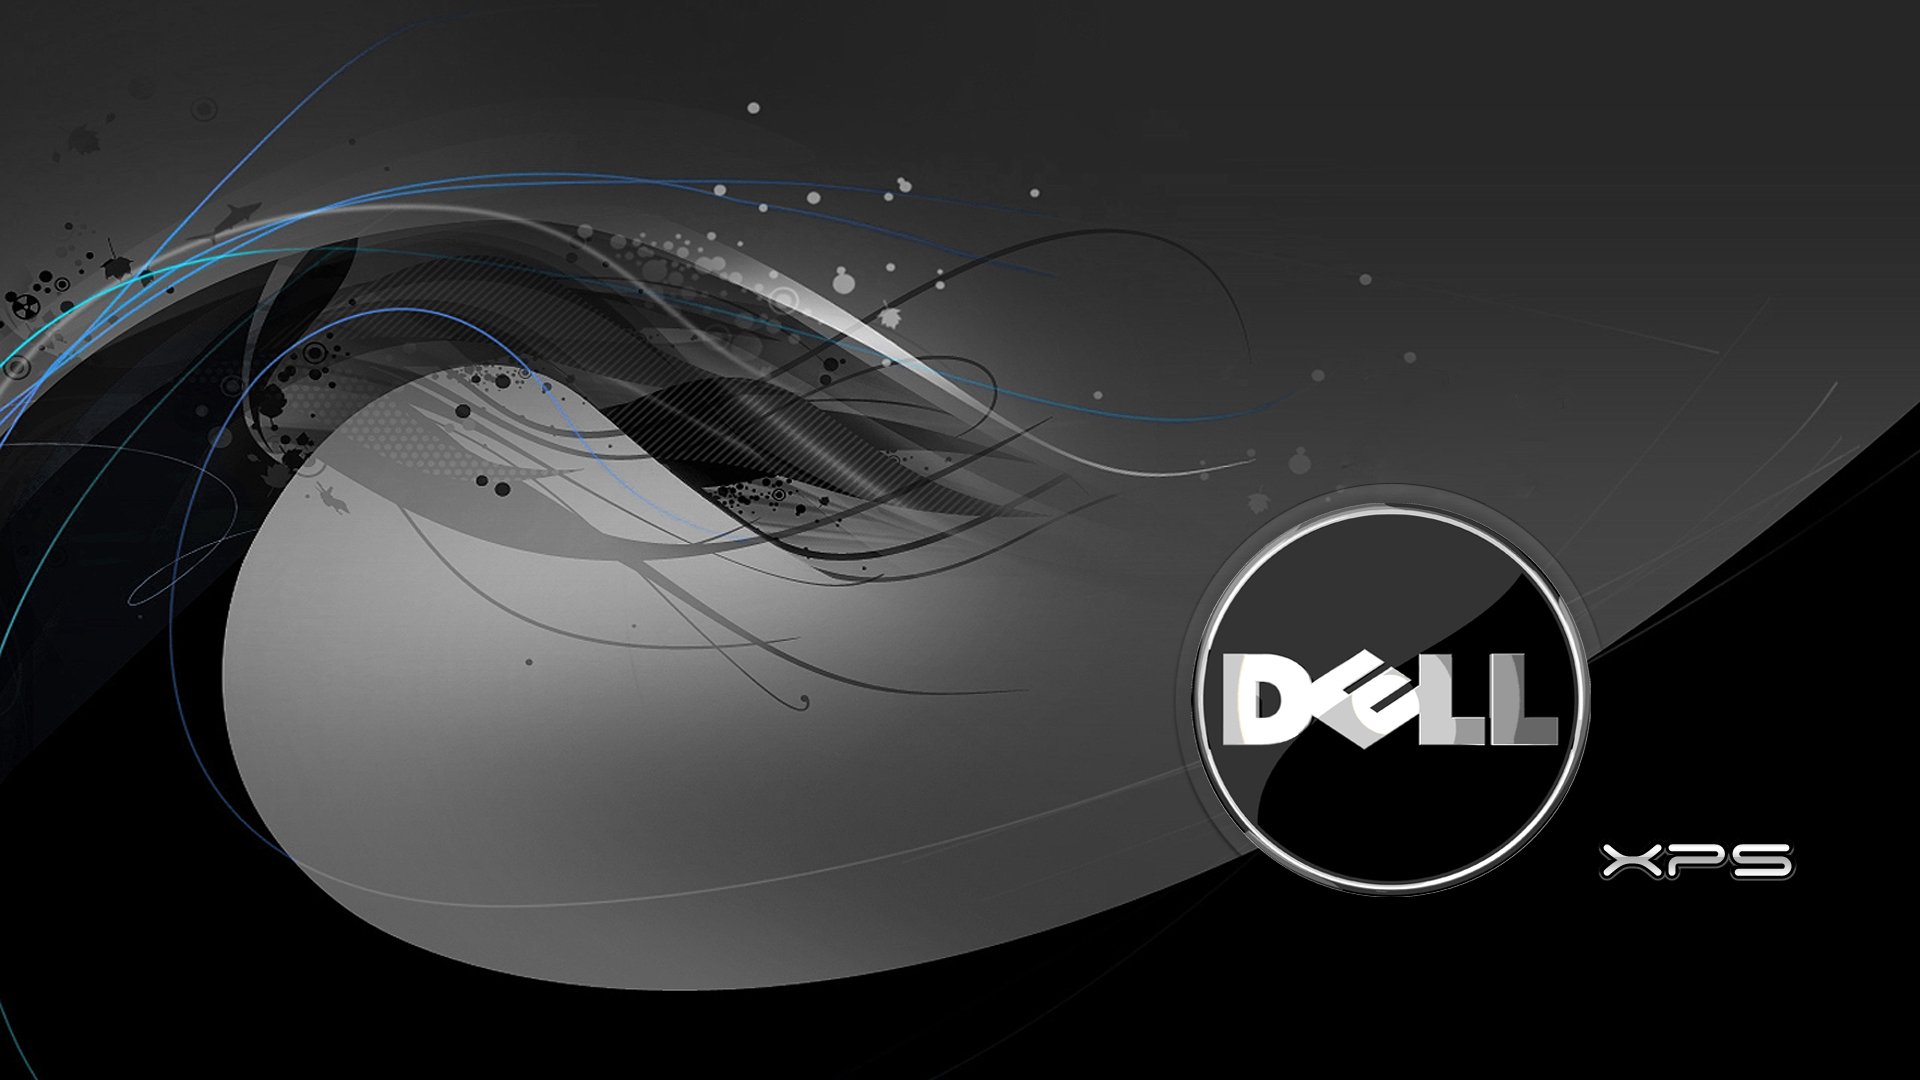 Hình nền máy tính chơi game Dell sẽ làm bạn say mê ngay từ cái nhìn đầu tiên. Với độ phân giải tuyệt vời và thiết kế đẹp mắt, hình nền sẽ khiến cho trải nghiệm chơi game của bạn trở nên hoàn hảo hơn bao giờ hết. Hãy truy cập ngay để khám phá những thiết kế độc đáo và đầy sáng tạo của Dell!